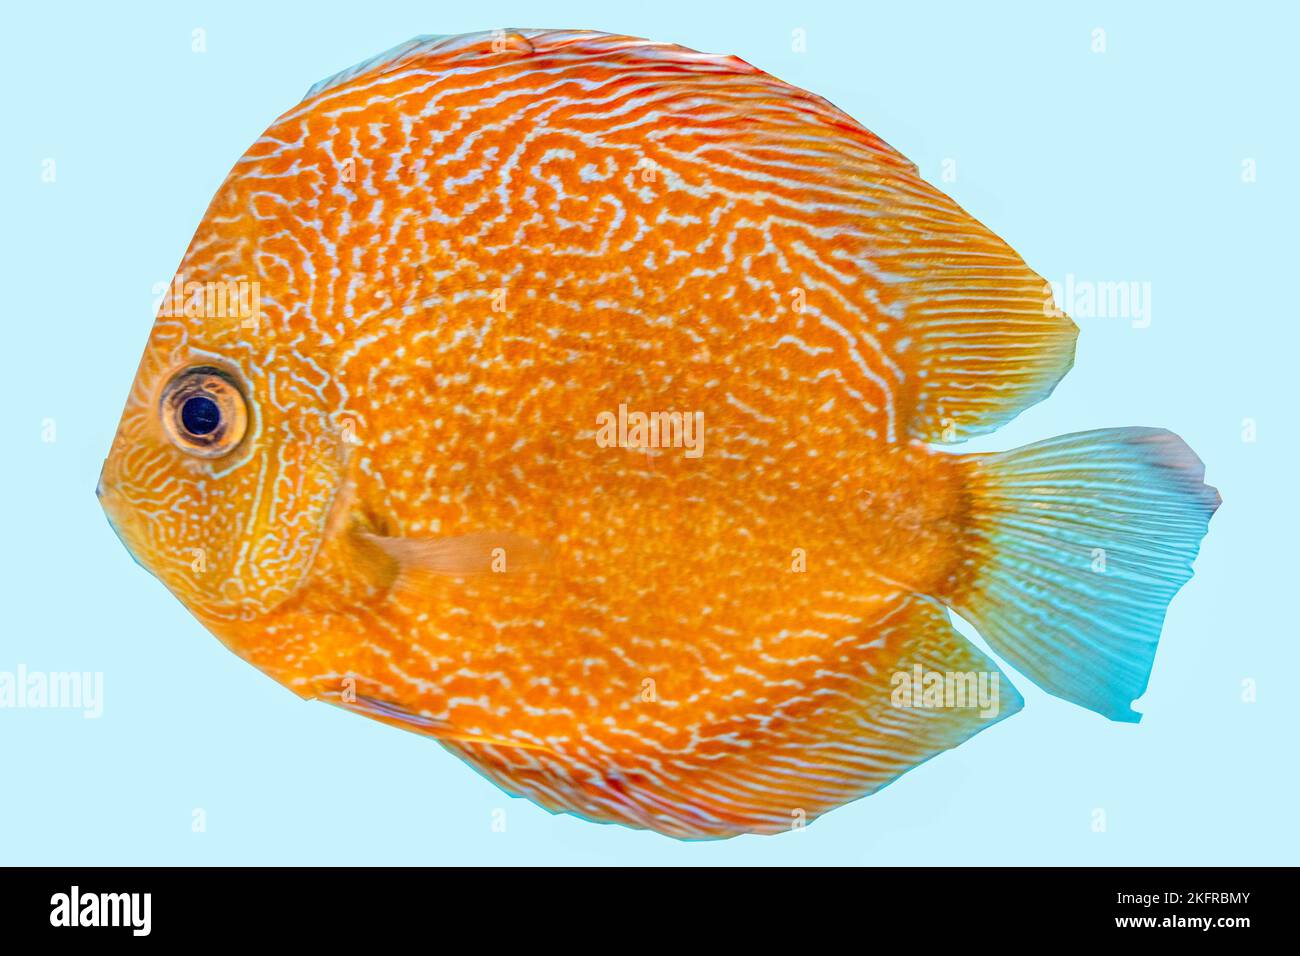 Discus fish, orange symphysodon discus in aquarium. Stock Photo